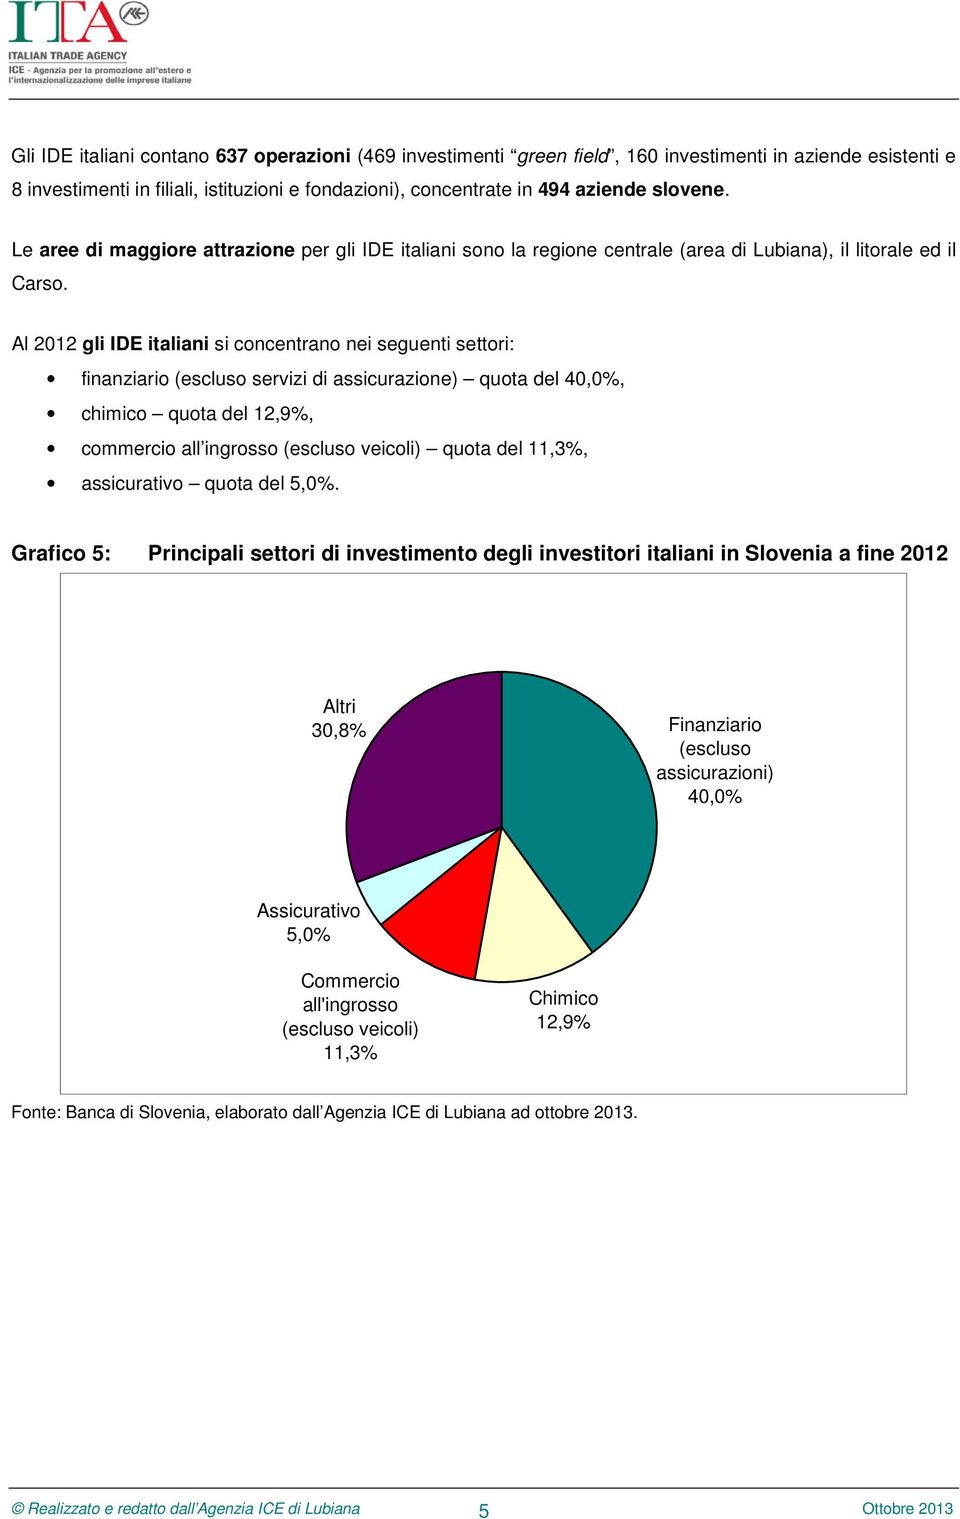 Al 2012 gli IDE italiani si concentrano nei seguenti settori: finanziario (escluso servizi di assicurazione) quota del 40,0%, chimico quota del 12,9%, commercio all ingrosso (escluso veicoli) quota